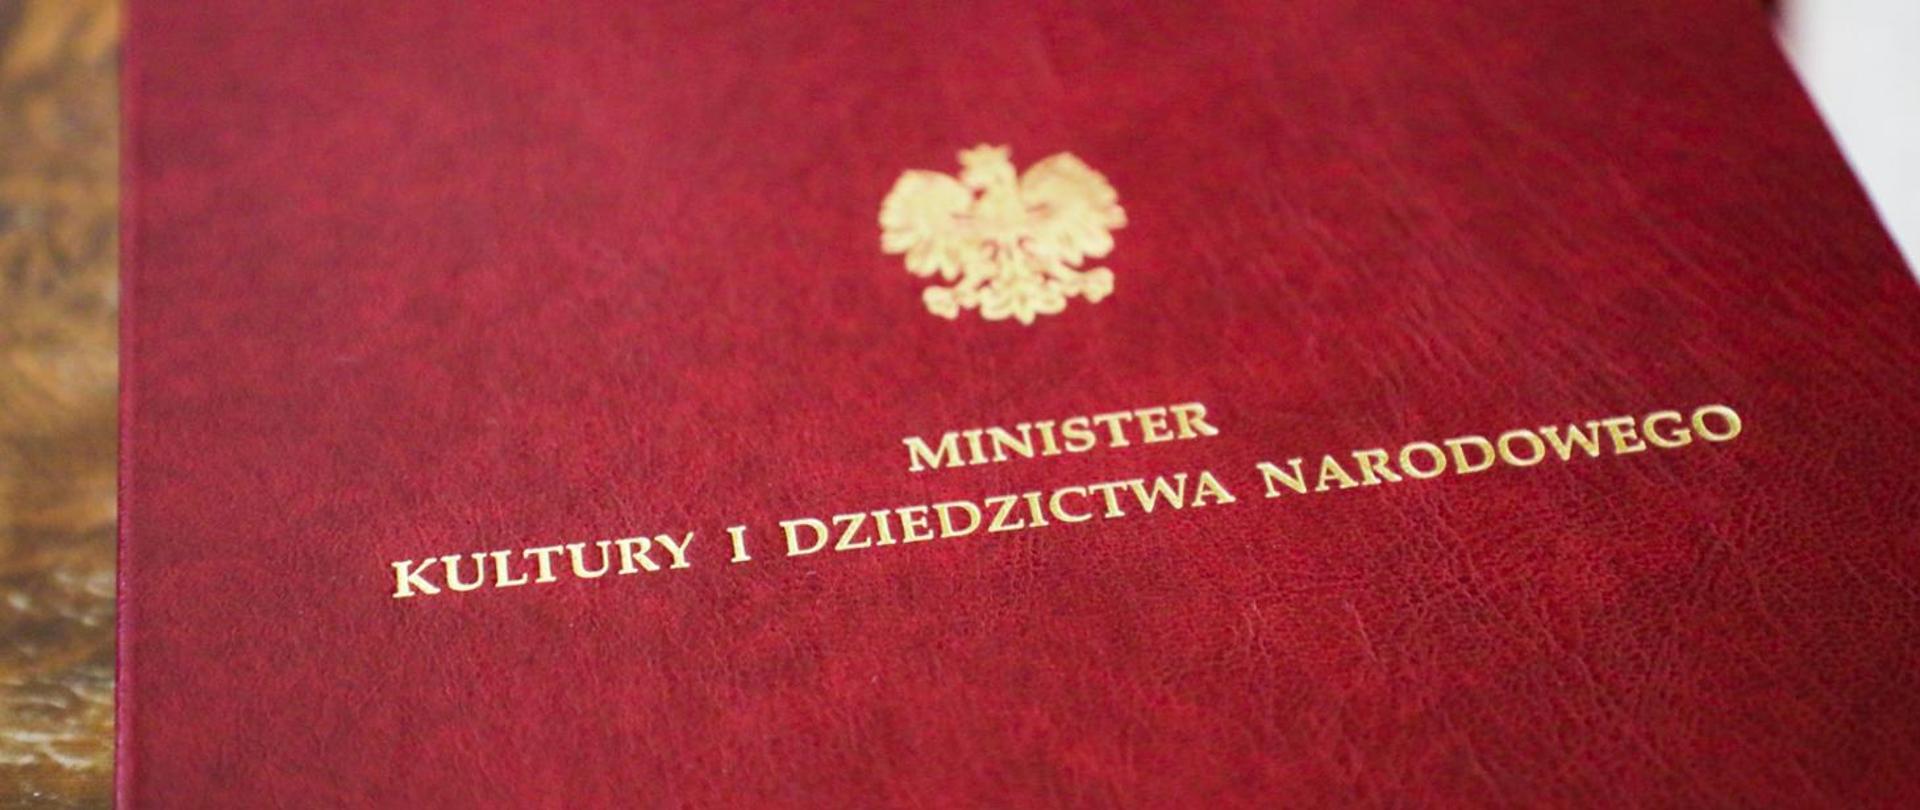 Bordowa teczka z napisem Minister Kultury i Dziedzictwa Narodowego, Fot. Danuta Matloch